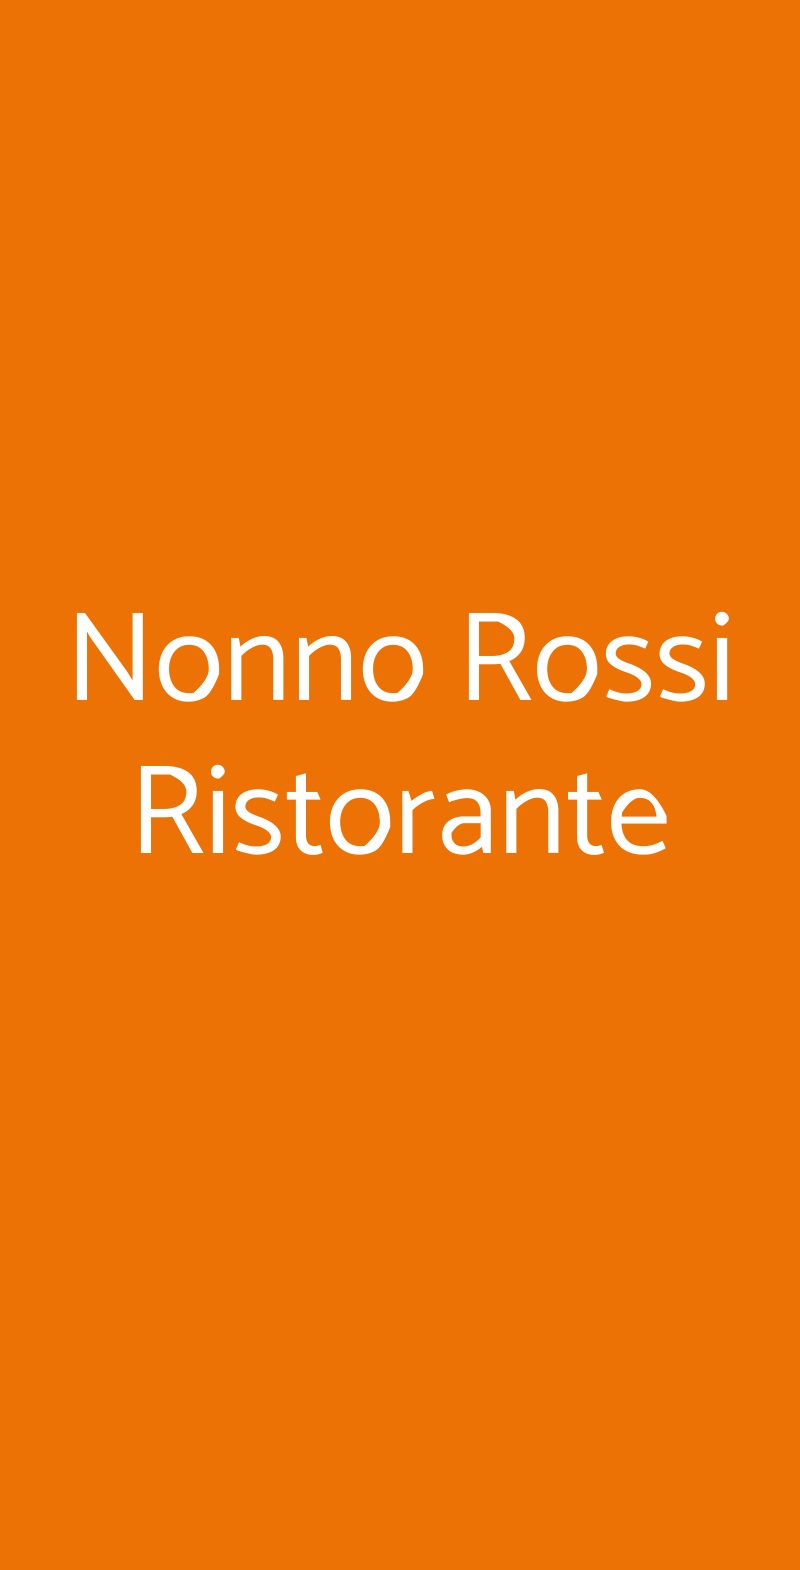 Nonno Rossi Ristorante Bologna menù 1 pagina